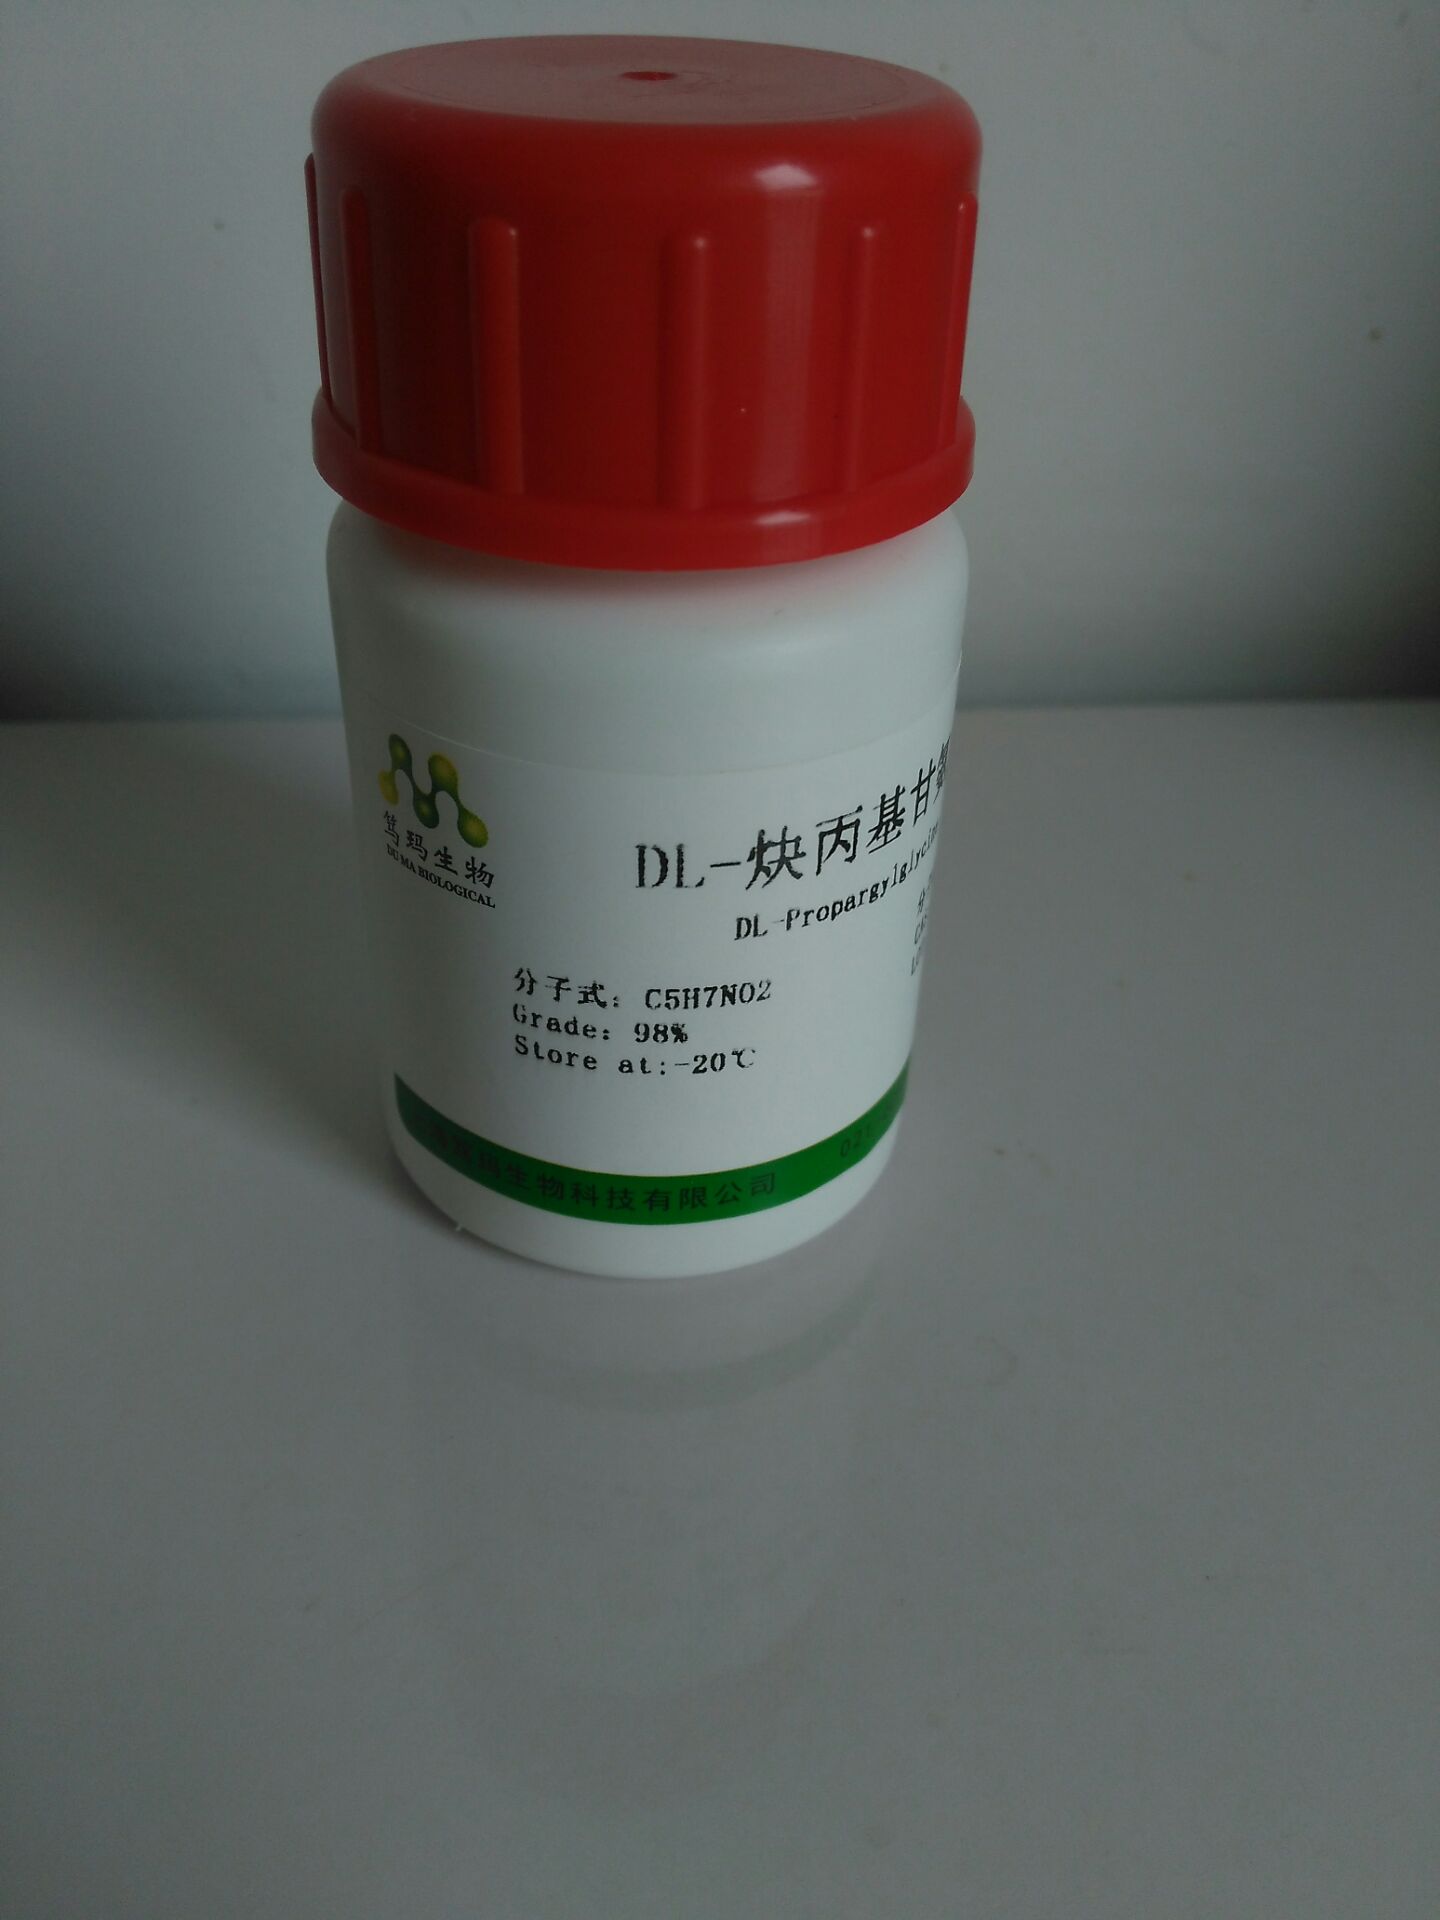 笃玛 DL-薄荷醇 价格